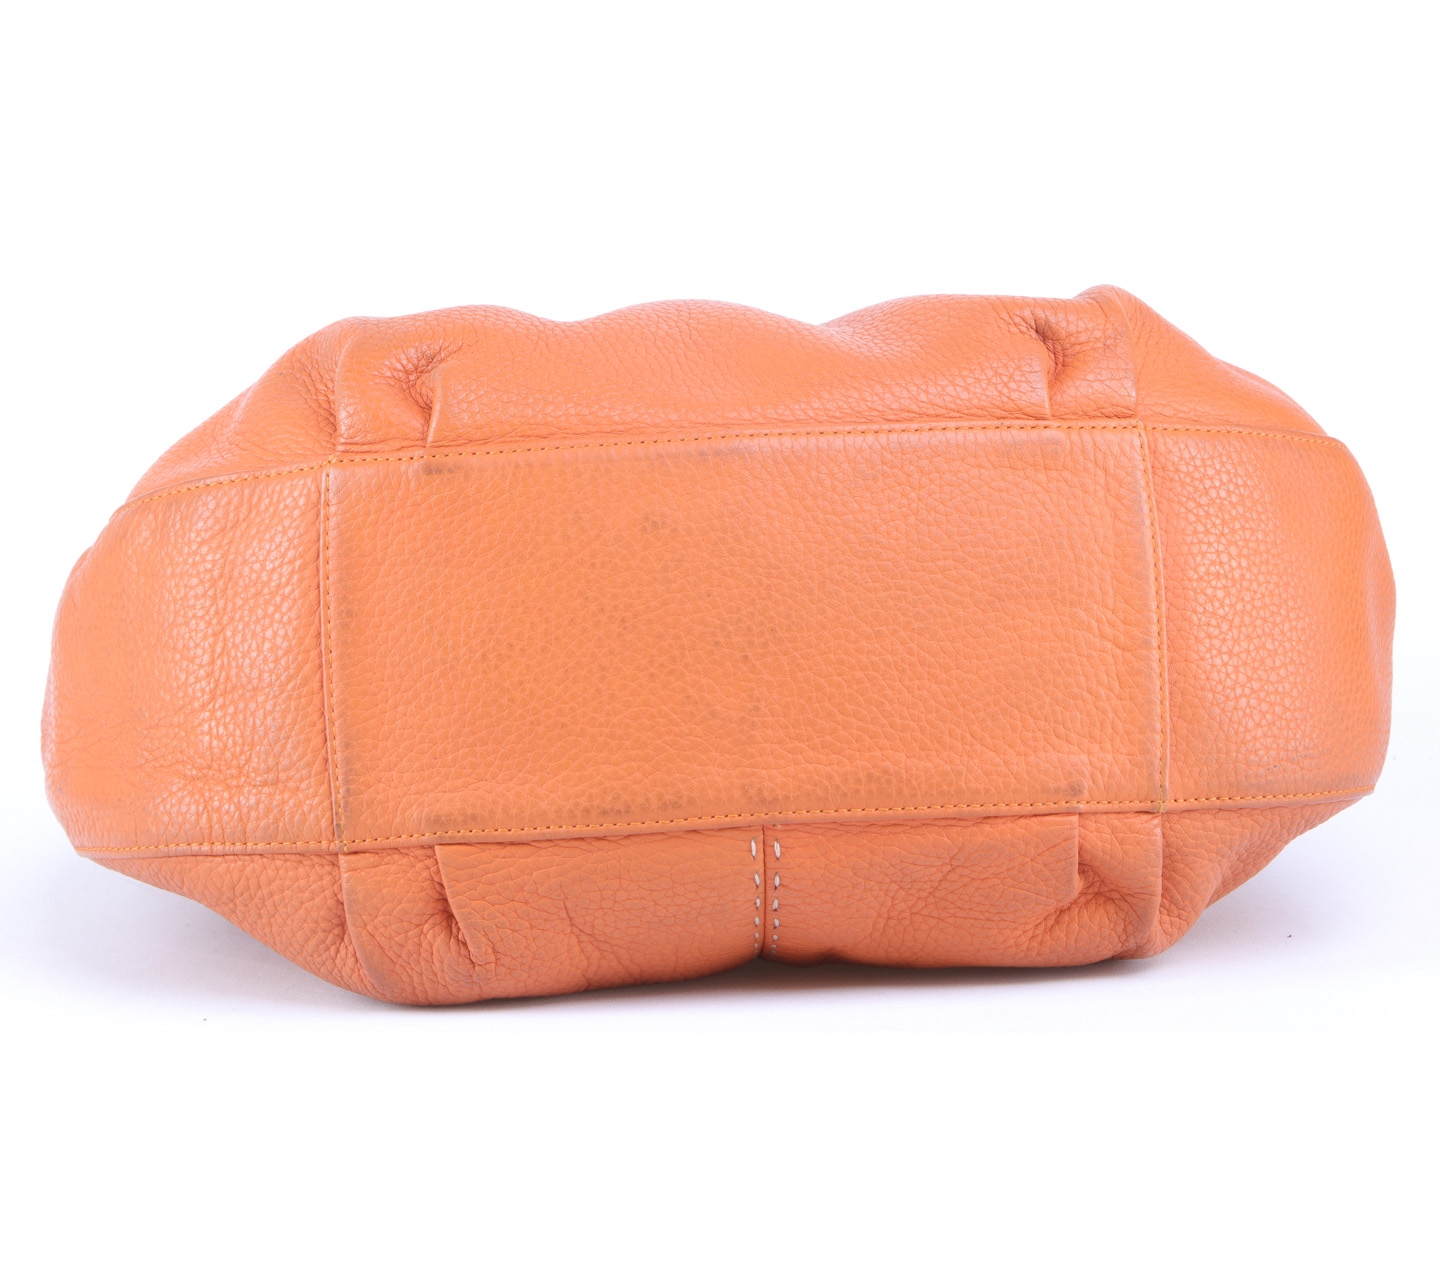 Braun Buffle Orange Shoulder Bag